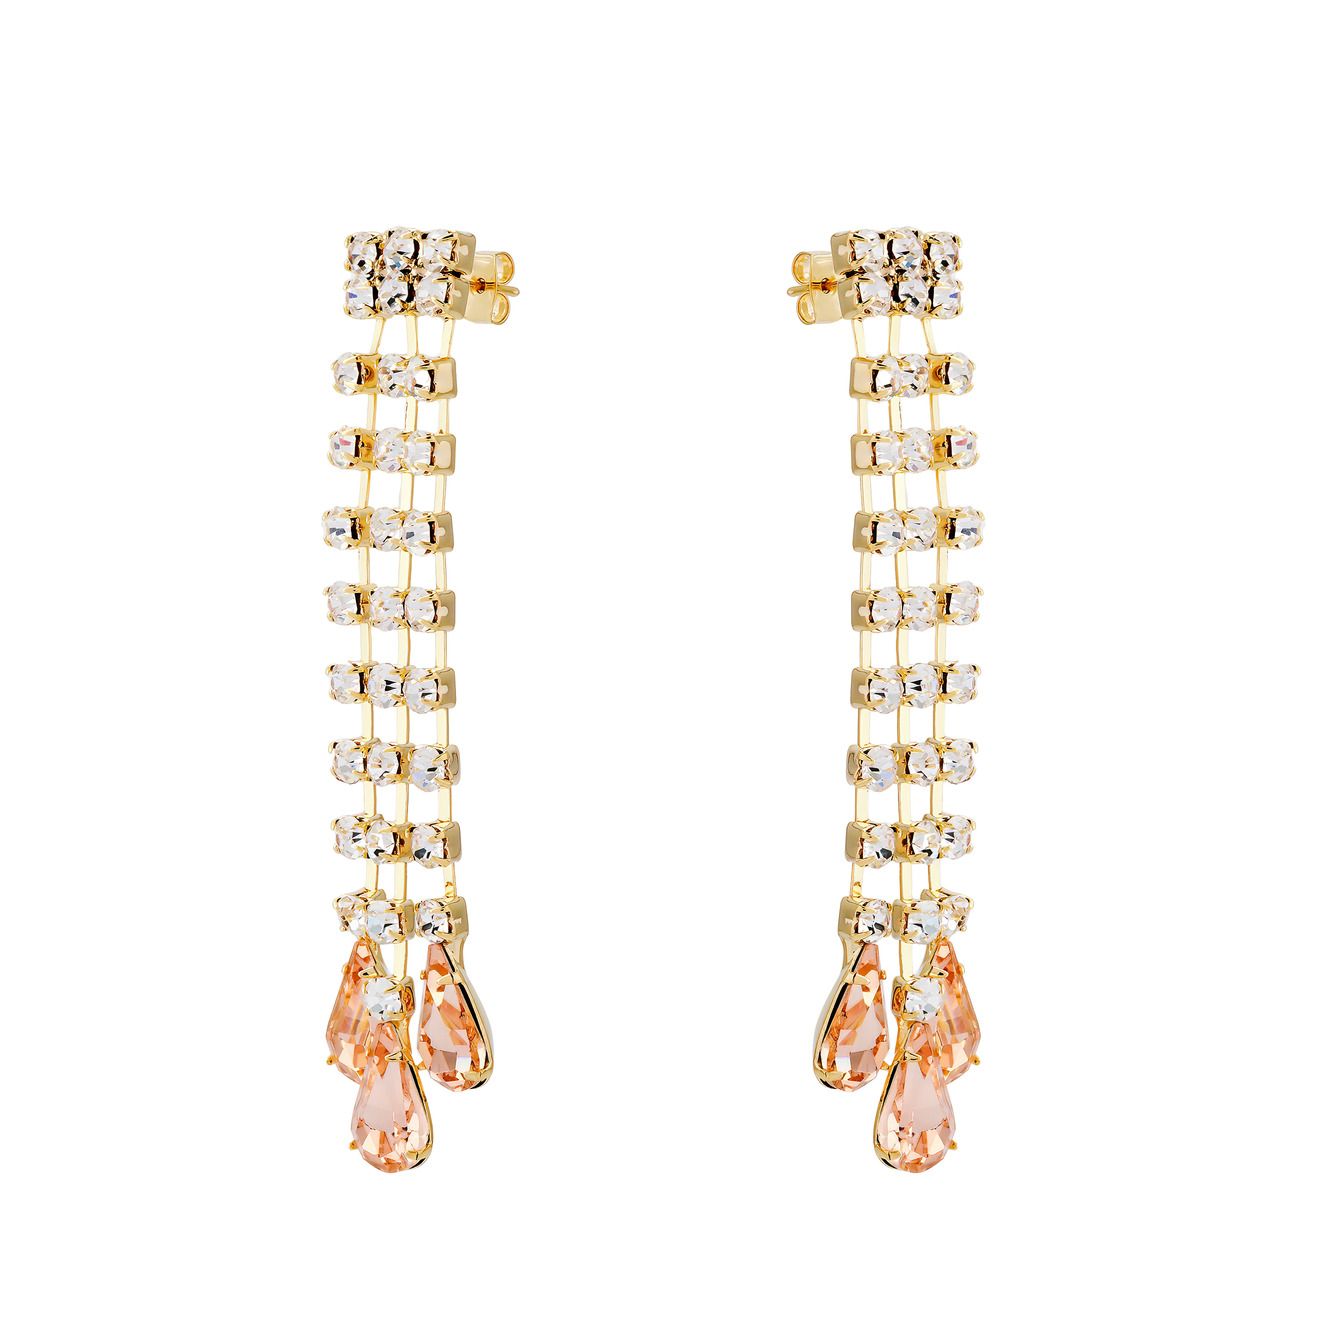 Herald Percy Золотистые серьги-дождики с дорожками из кристаллов и розовыми каплями цена и фото